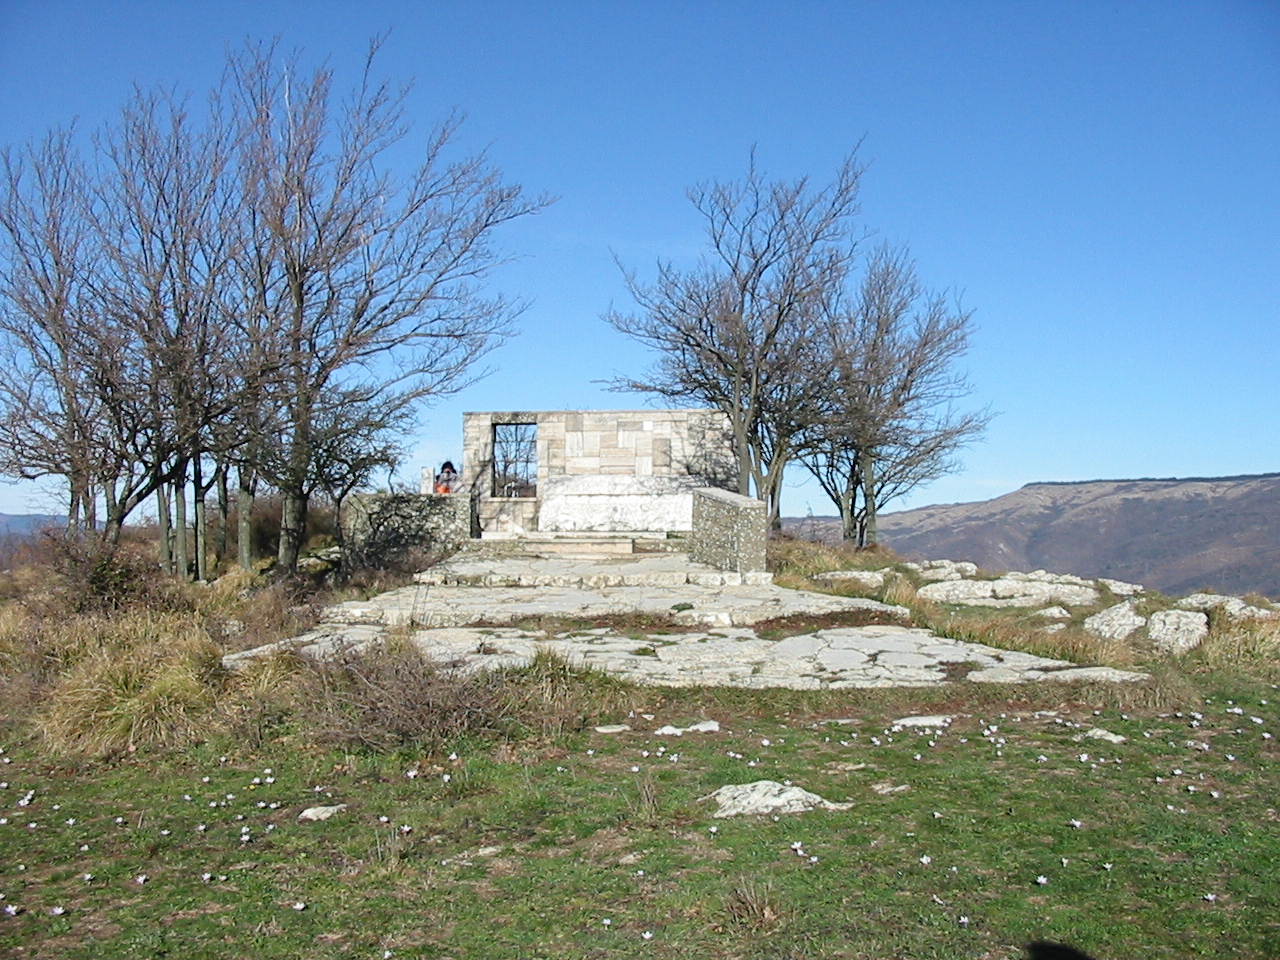 Curzio Malaparte's mausoleum in Prato